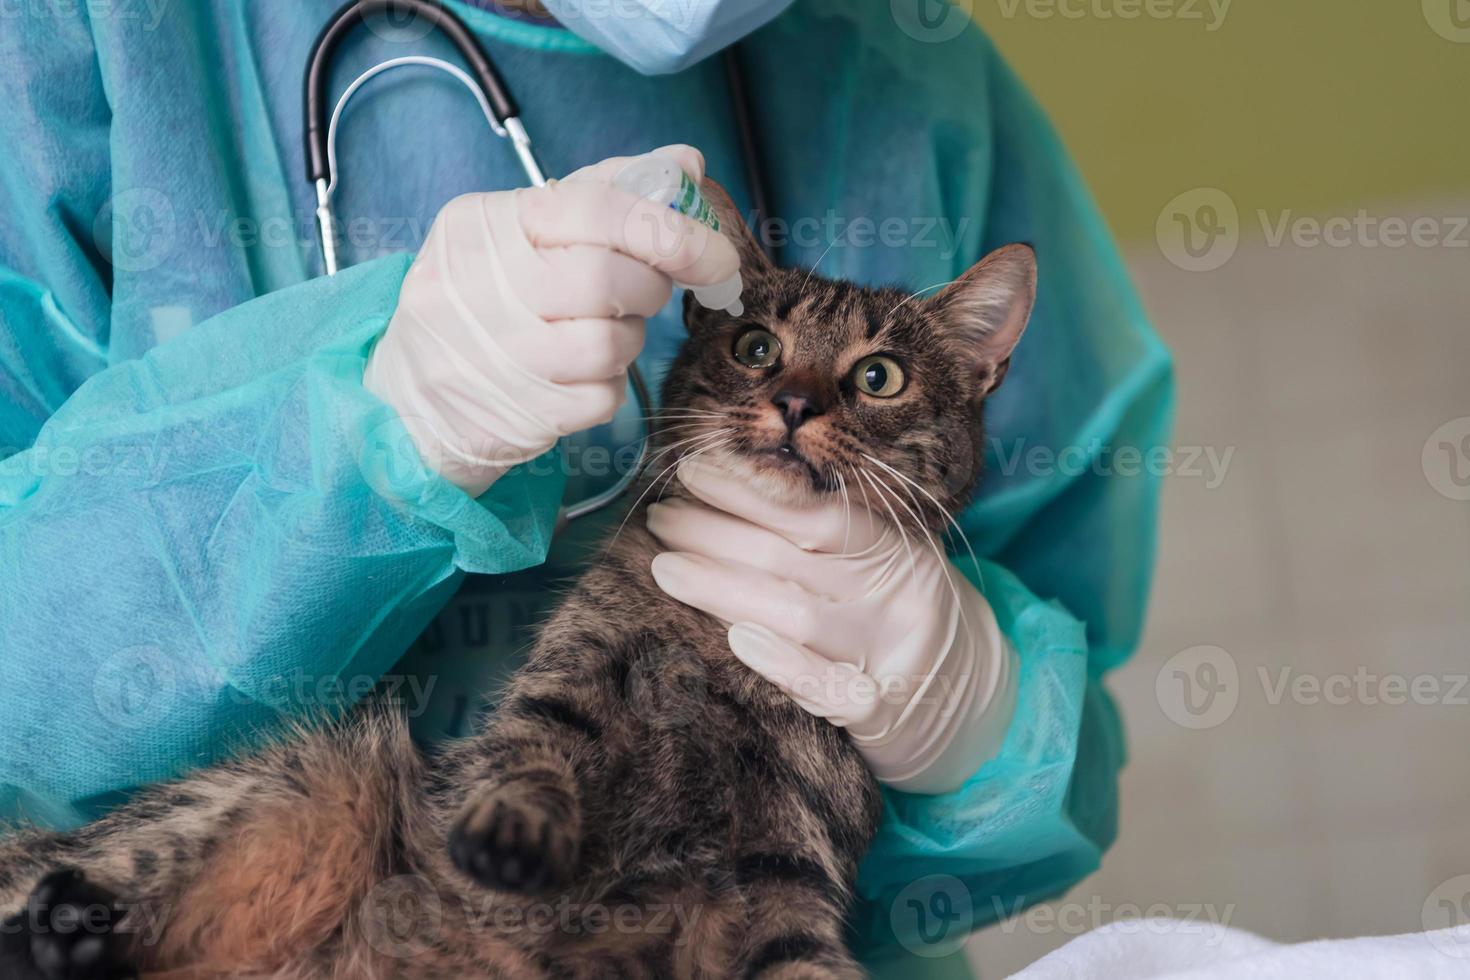 vrouwelijke chirurg of arts in het dierenziekenhuis die een schattige zieke kat voorbereidt op een operatie, waarbij druppels in kattenogen worden gedaan om te beschermen tijdens de behandeling. foto